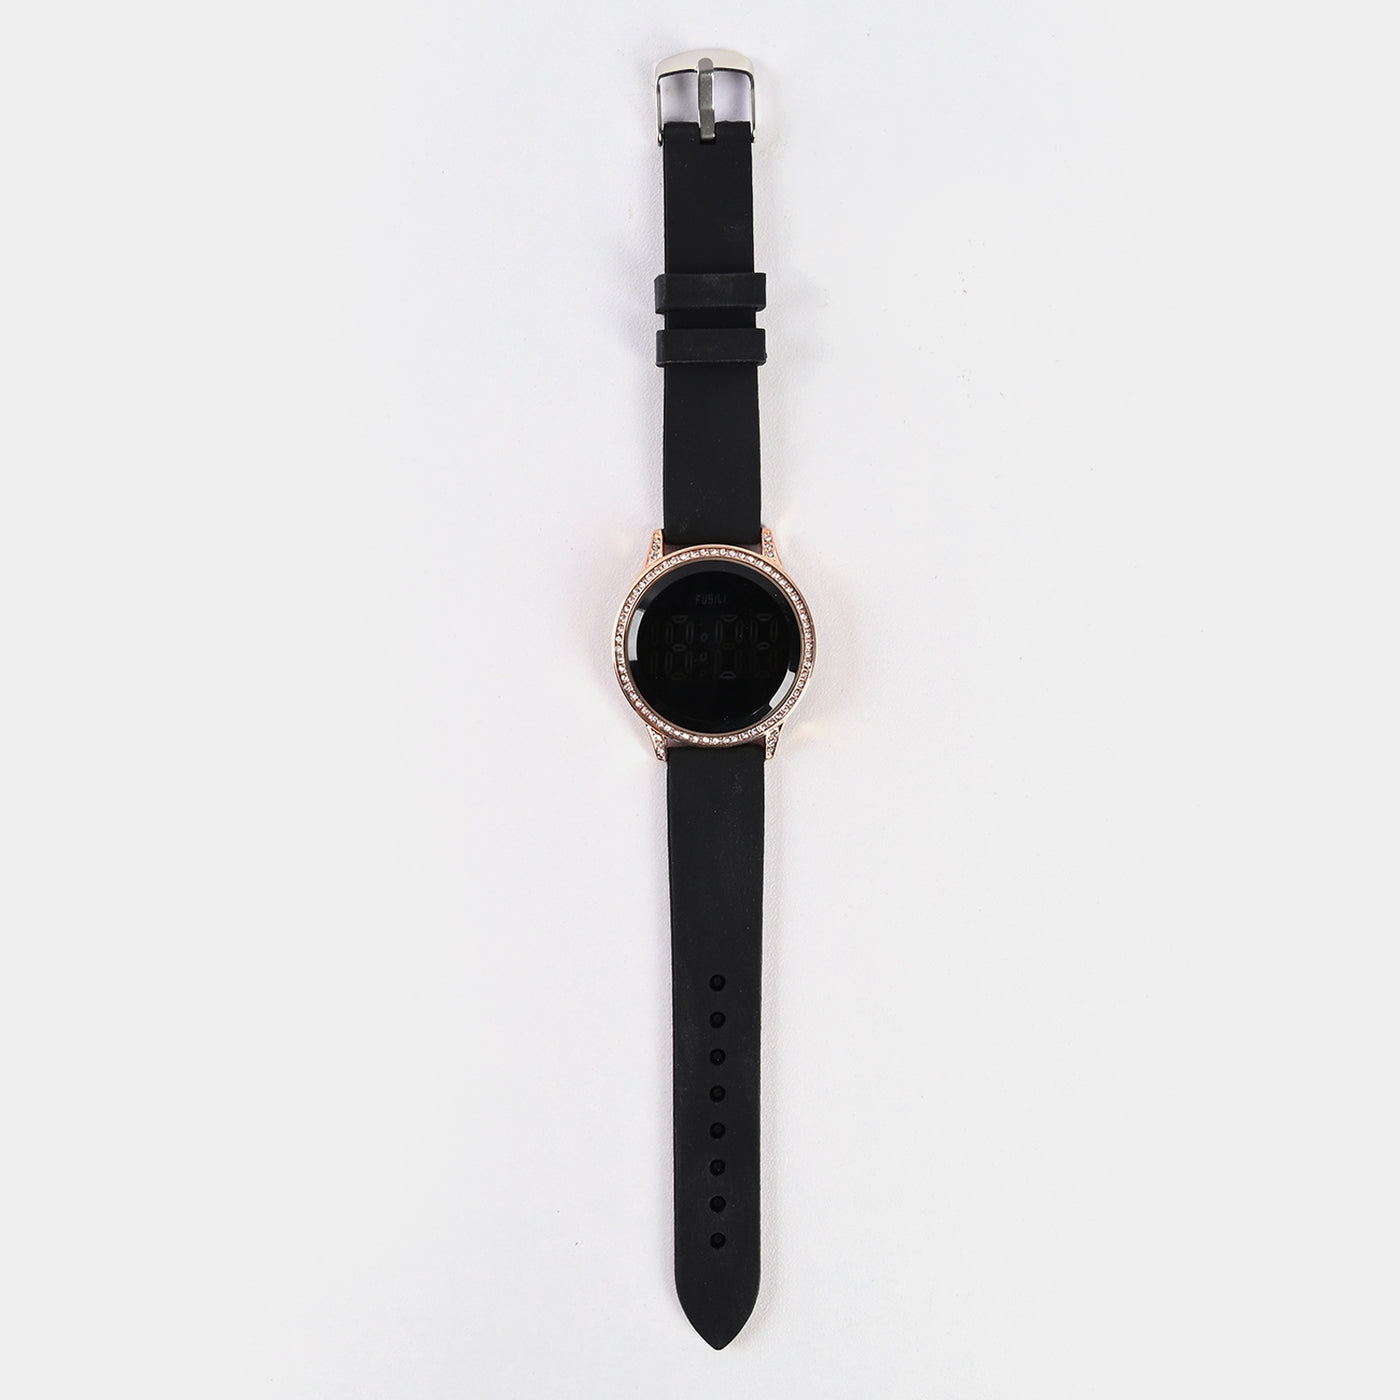 Elegant Touch Digital Wrist Watch For Girls